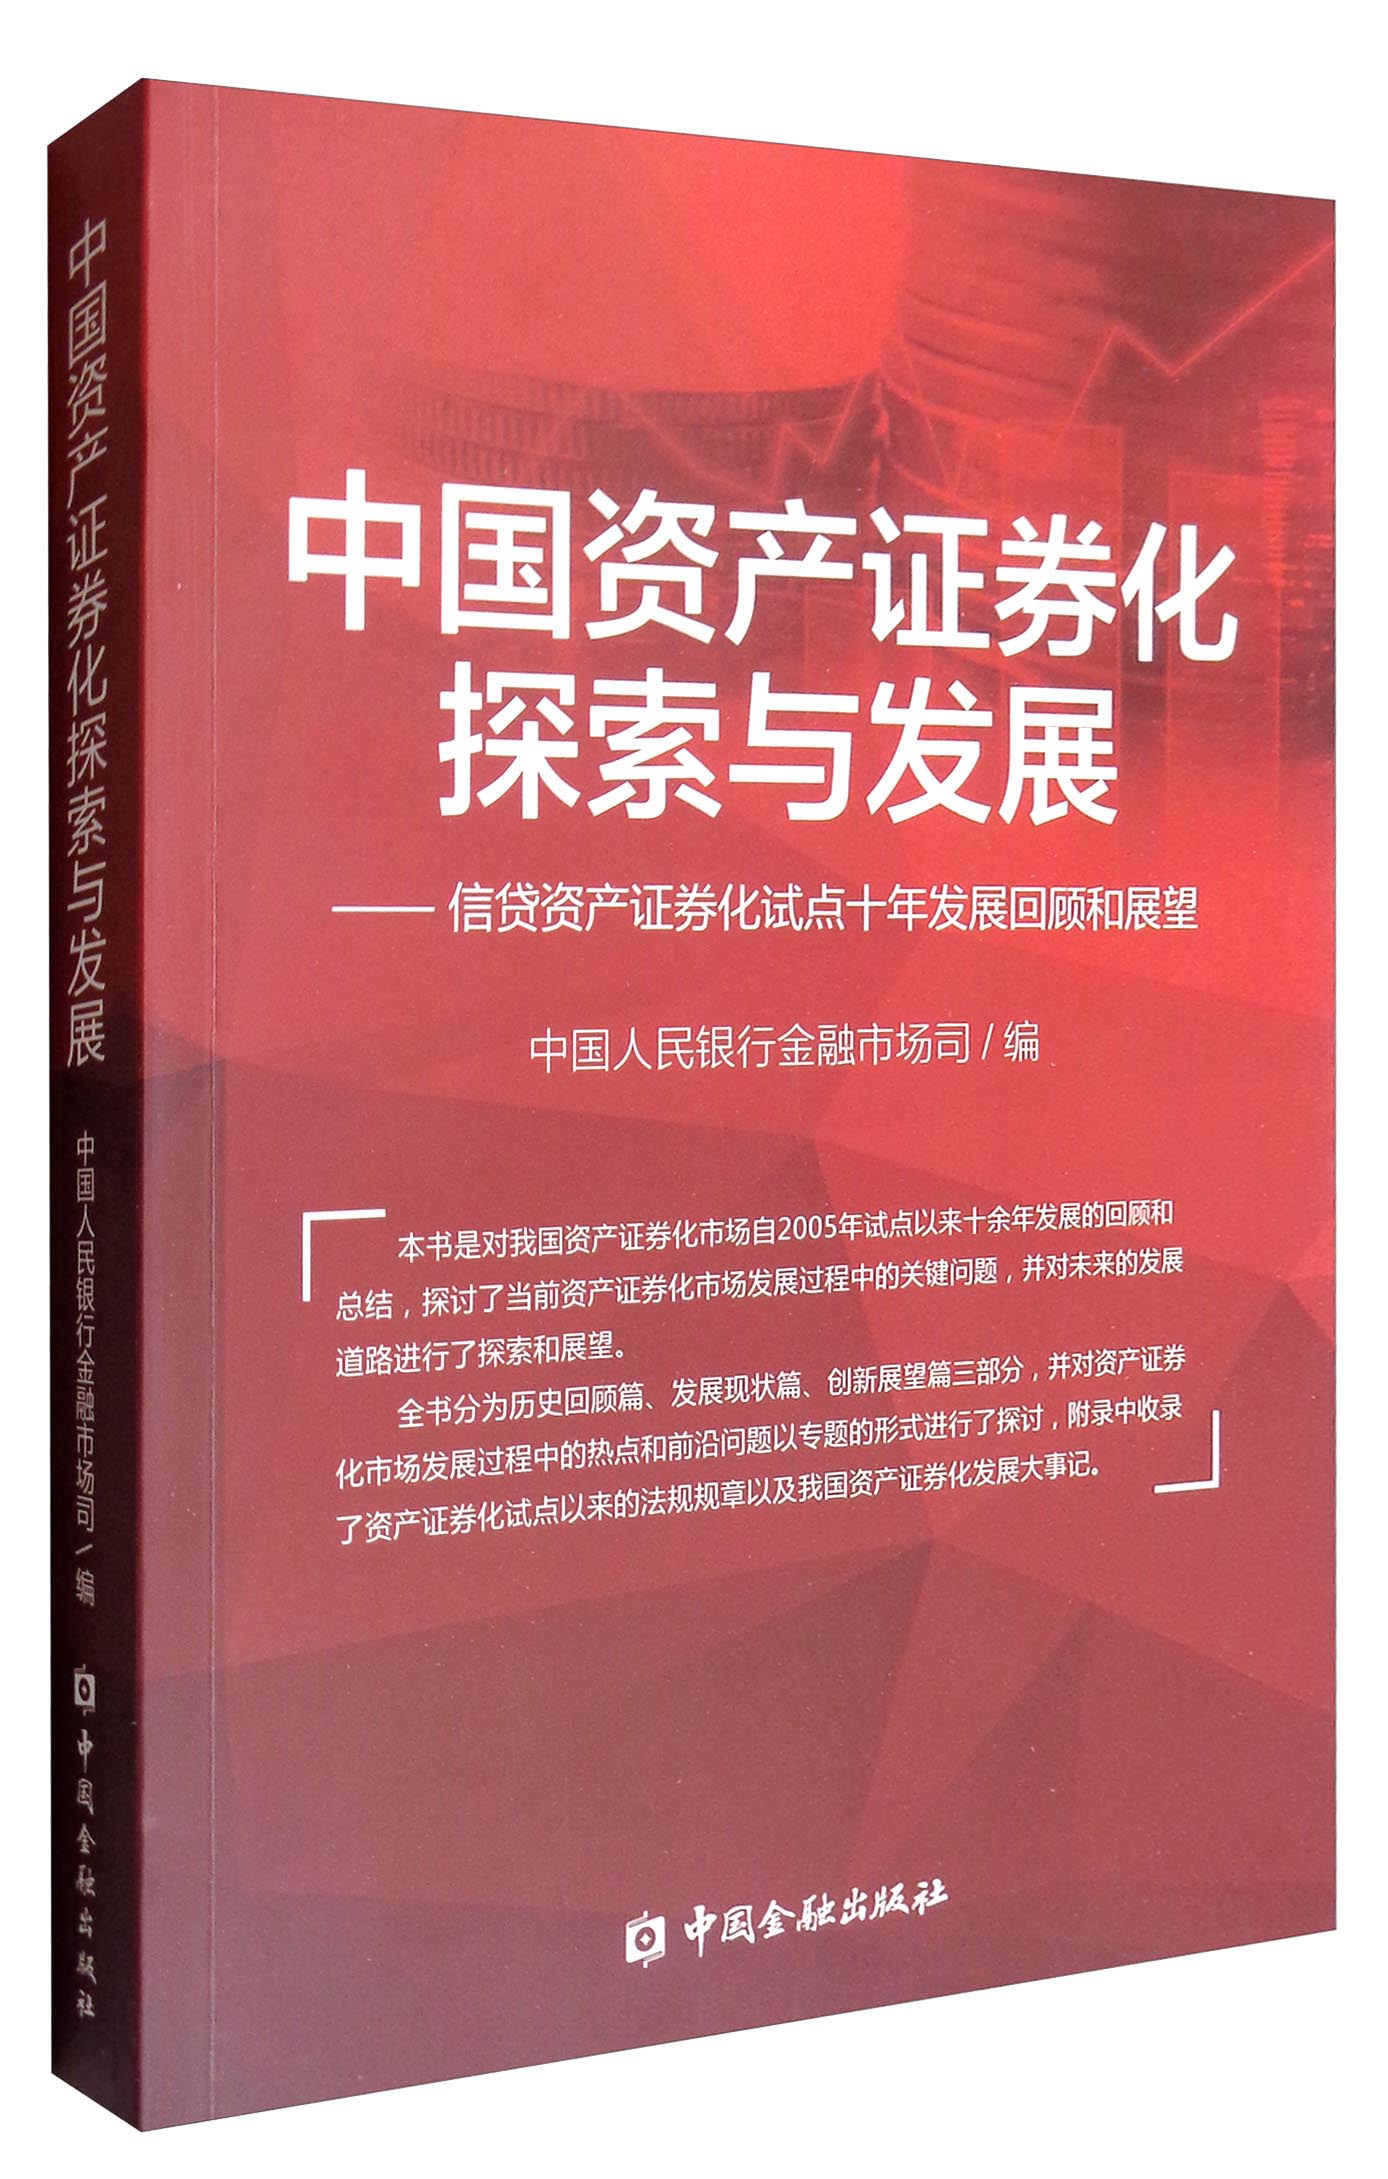 中国资产证券化探索与发展：信贷资产证券化试点十年发展回顾和展望 txt格式下载